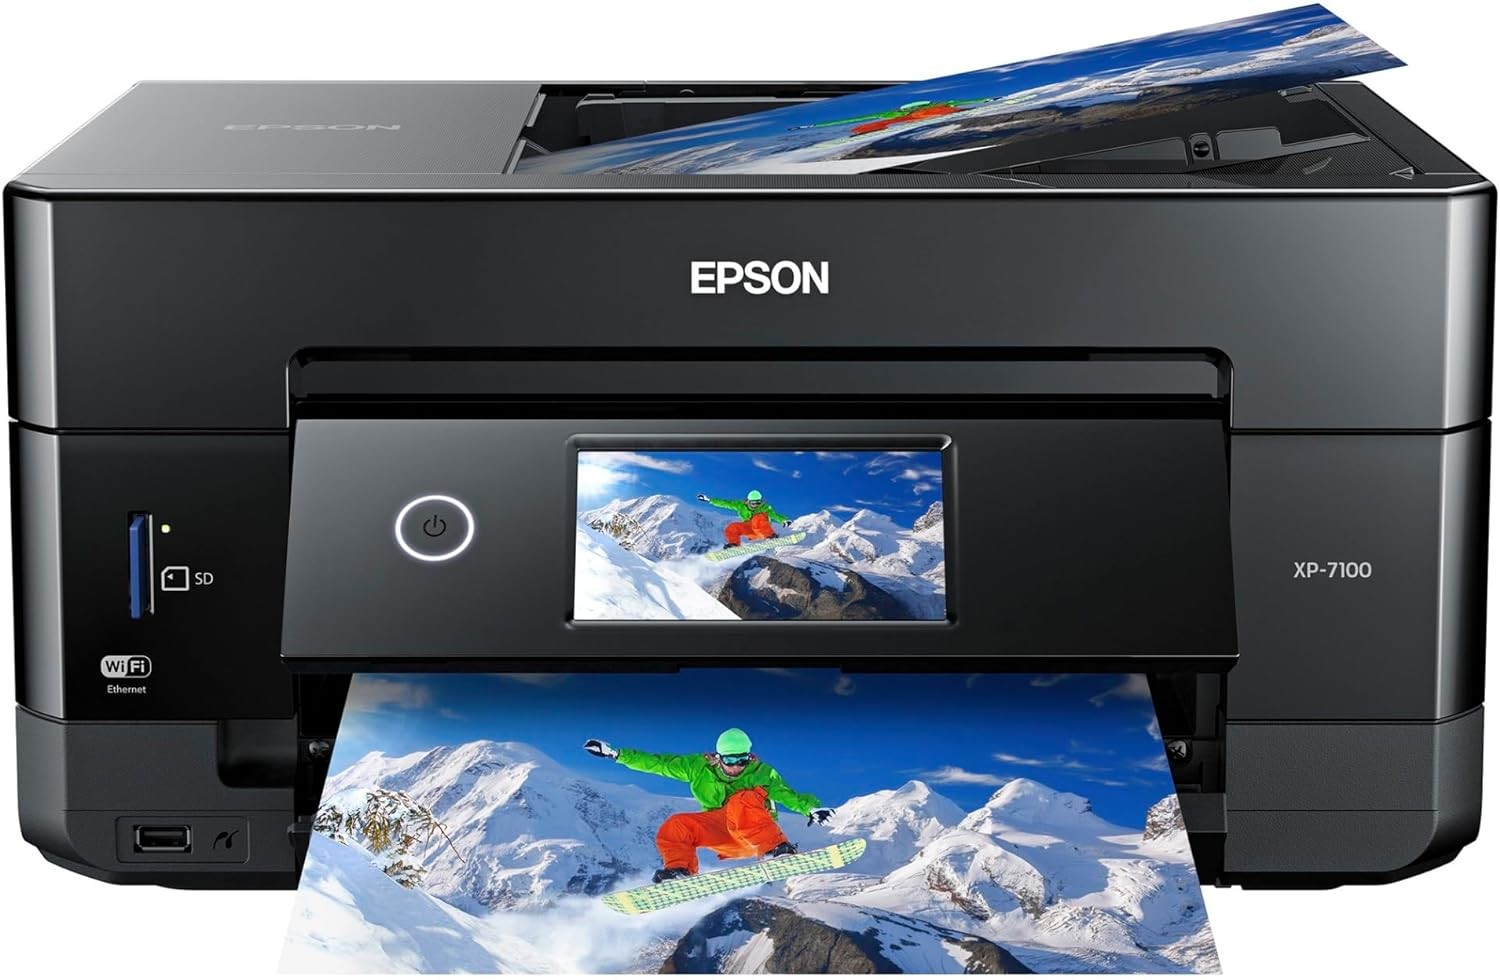 impresoras y scanners - Impresora Epson XP-7100 Expression de fotografía a color Premium Wireeles, usb 1